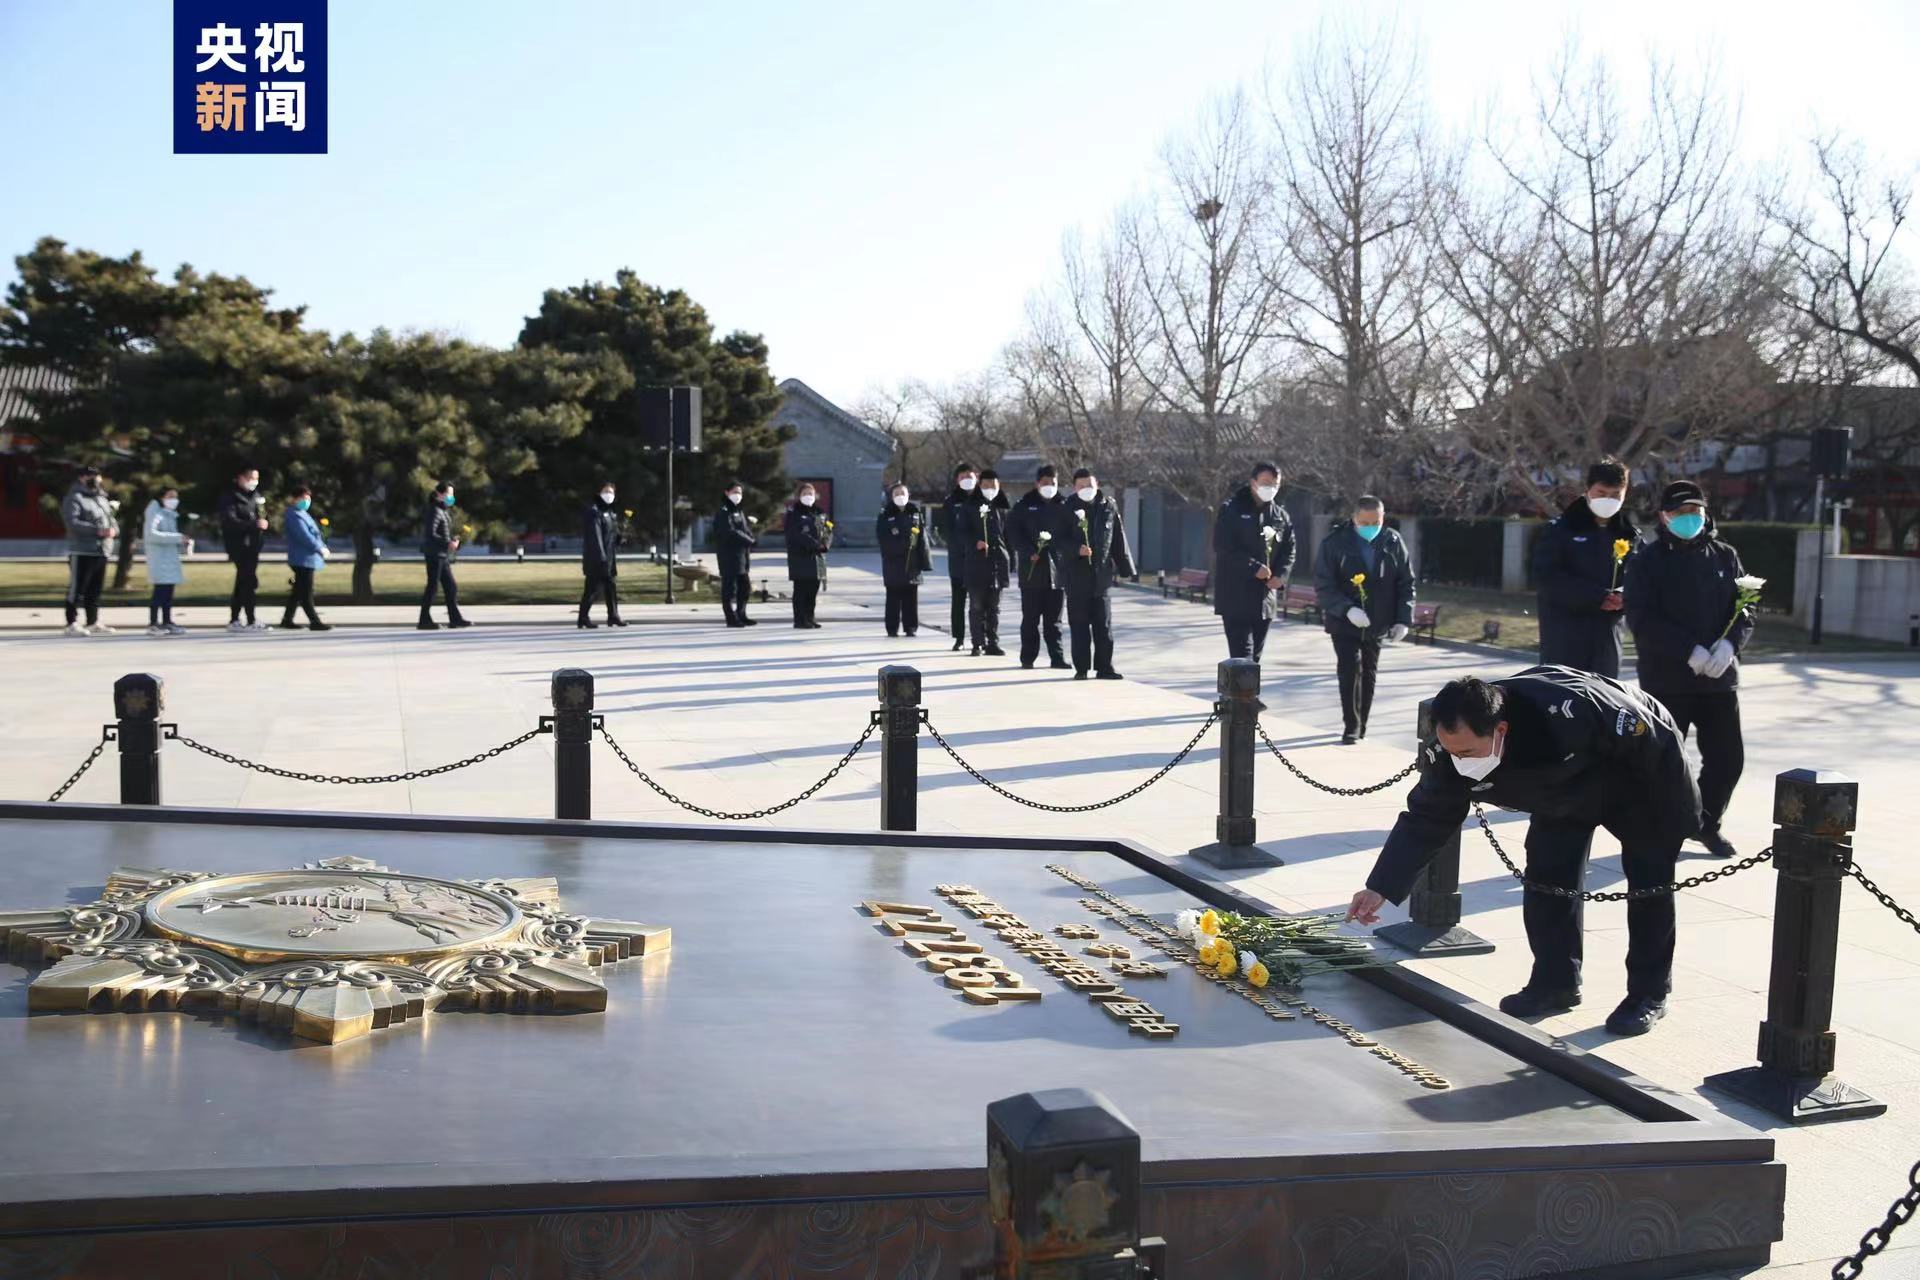 जापानी अतिक्रमण विरोधी चिनियाँ युद्धस्मारक हलमा नानचिङ नरसंहारका पीडितहरूको स्मृति दिवस